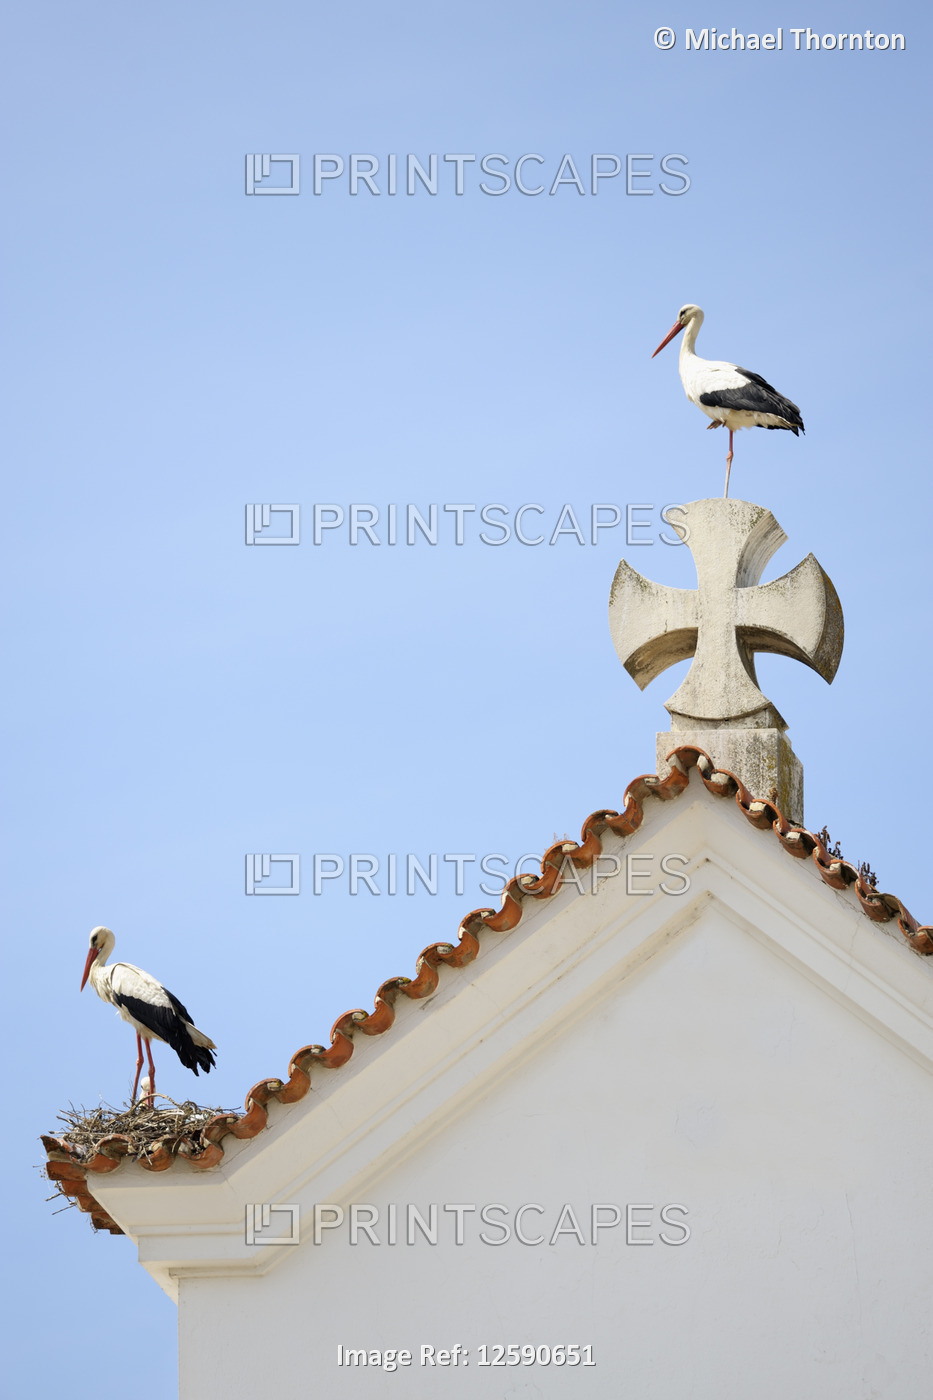 Apex of the roof of the Facade of Nossa Senhora dos Aflitos, Olháo, Faro, ...